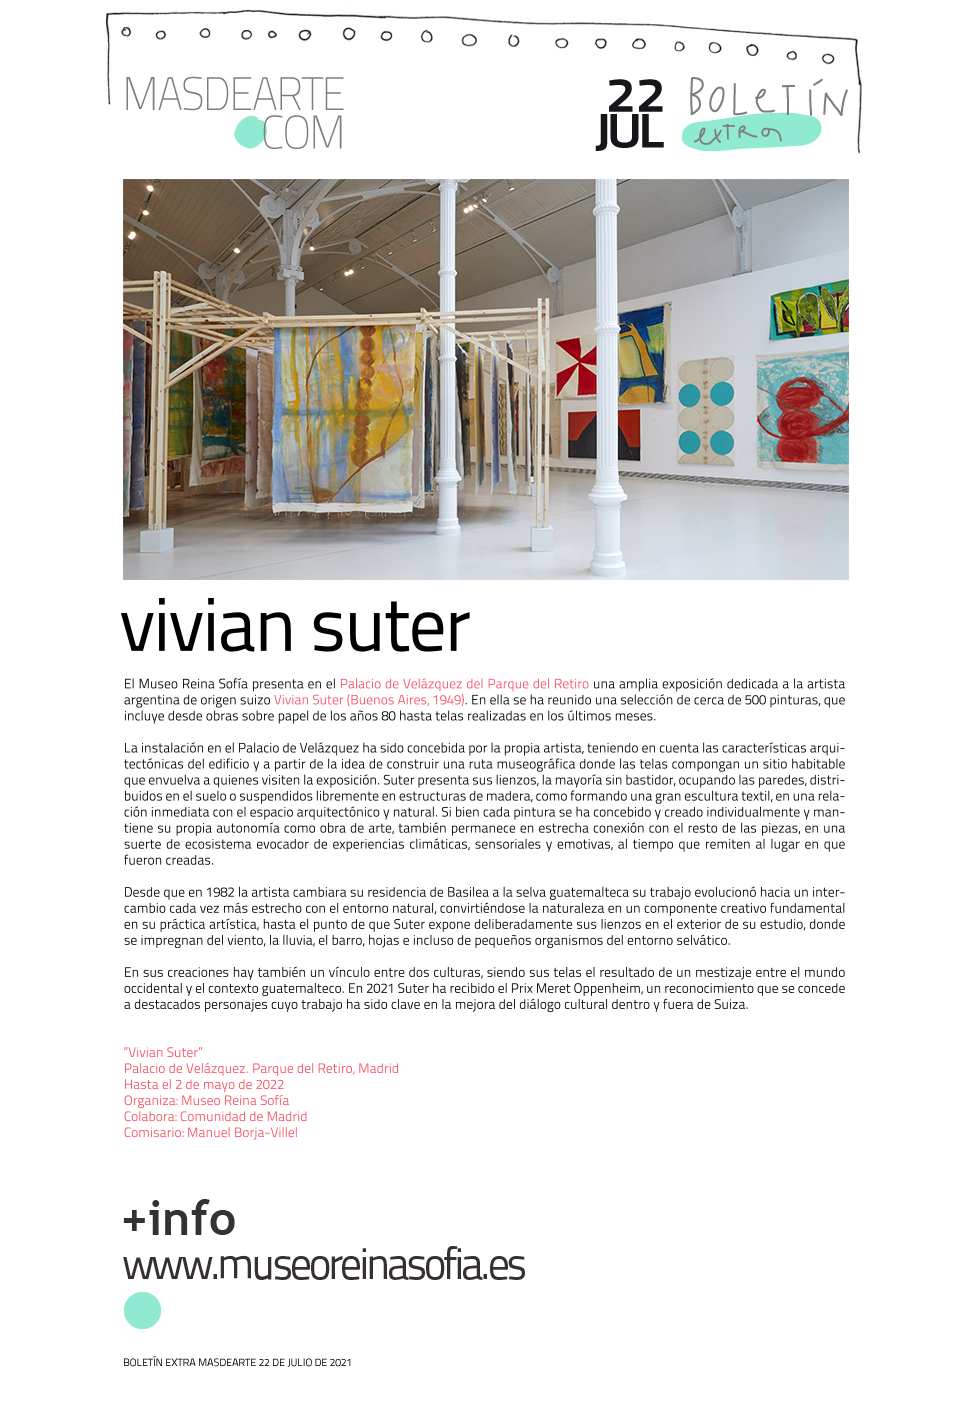 Extra masdearte: Vivian Suter en el Palacio de Velázquez